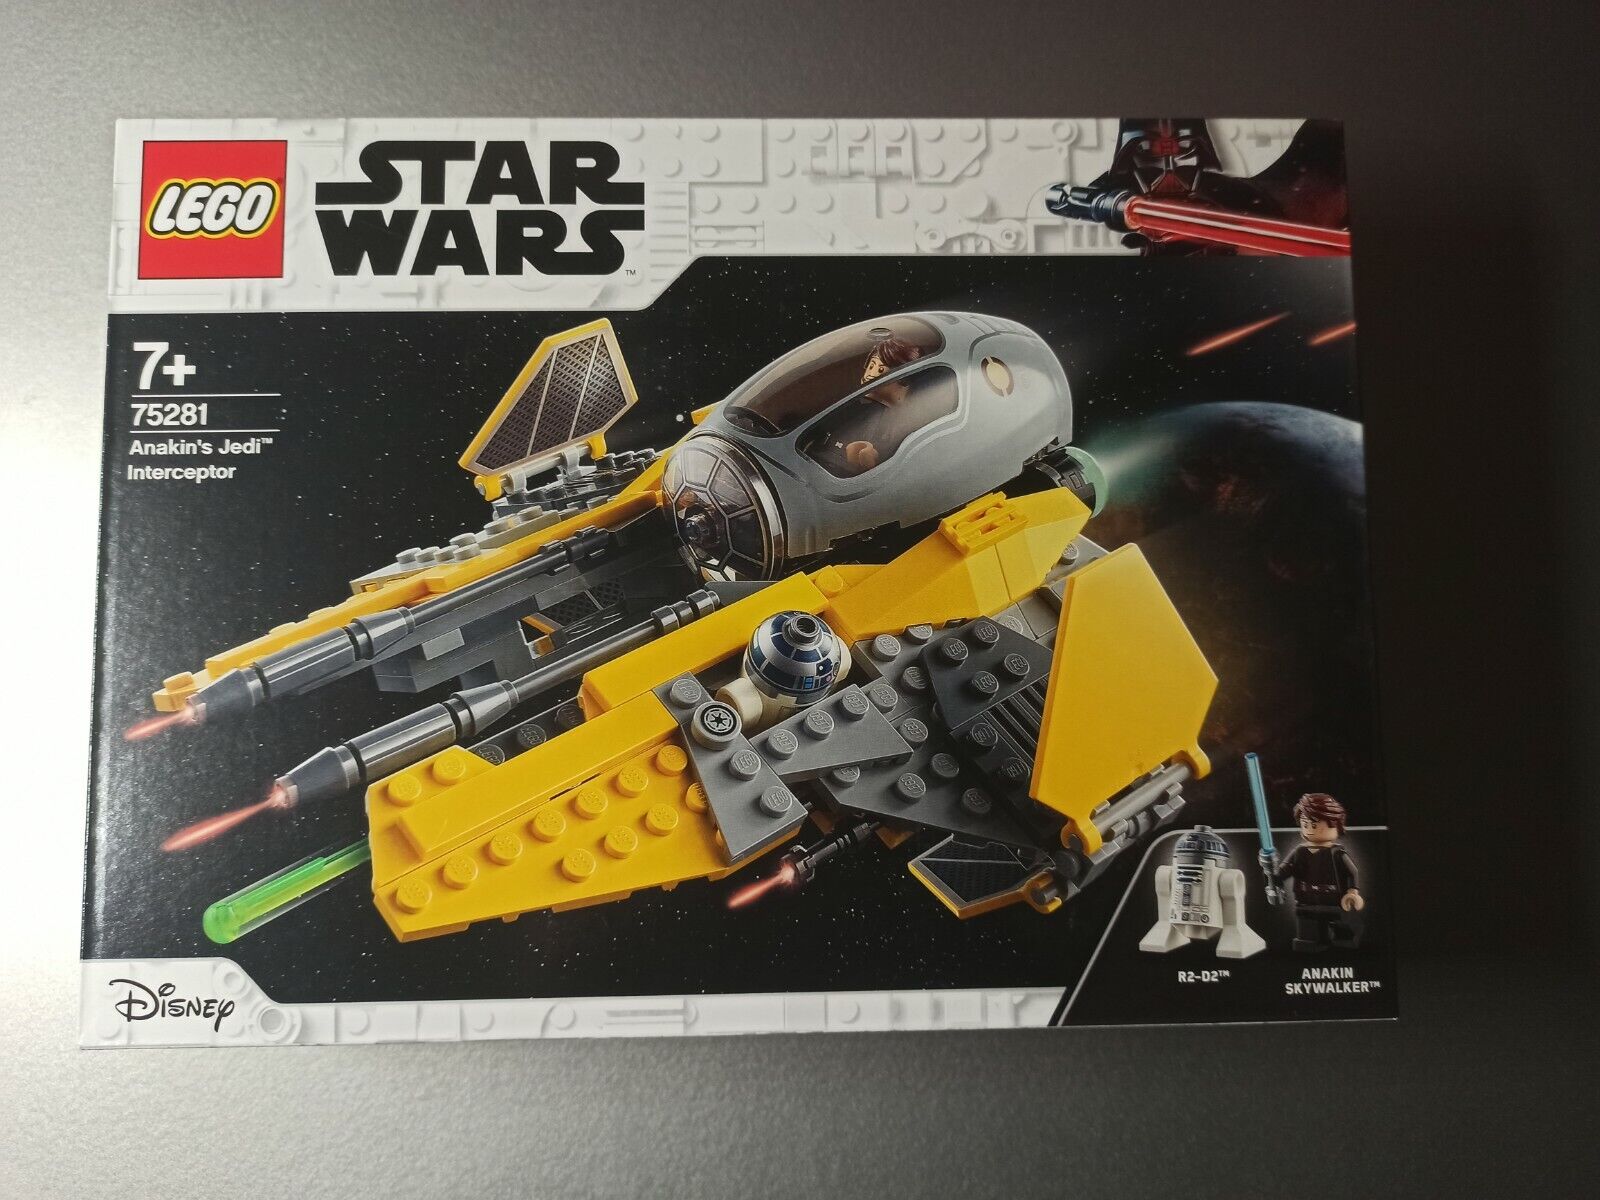 fin de semana Profeta fe Lego 75281.Anakin's Jedi Interceptor. Interceptor de Anakin. | eBay